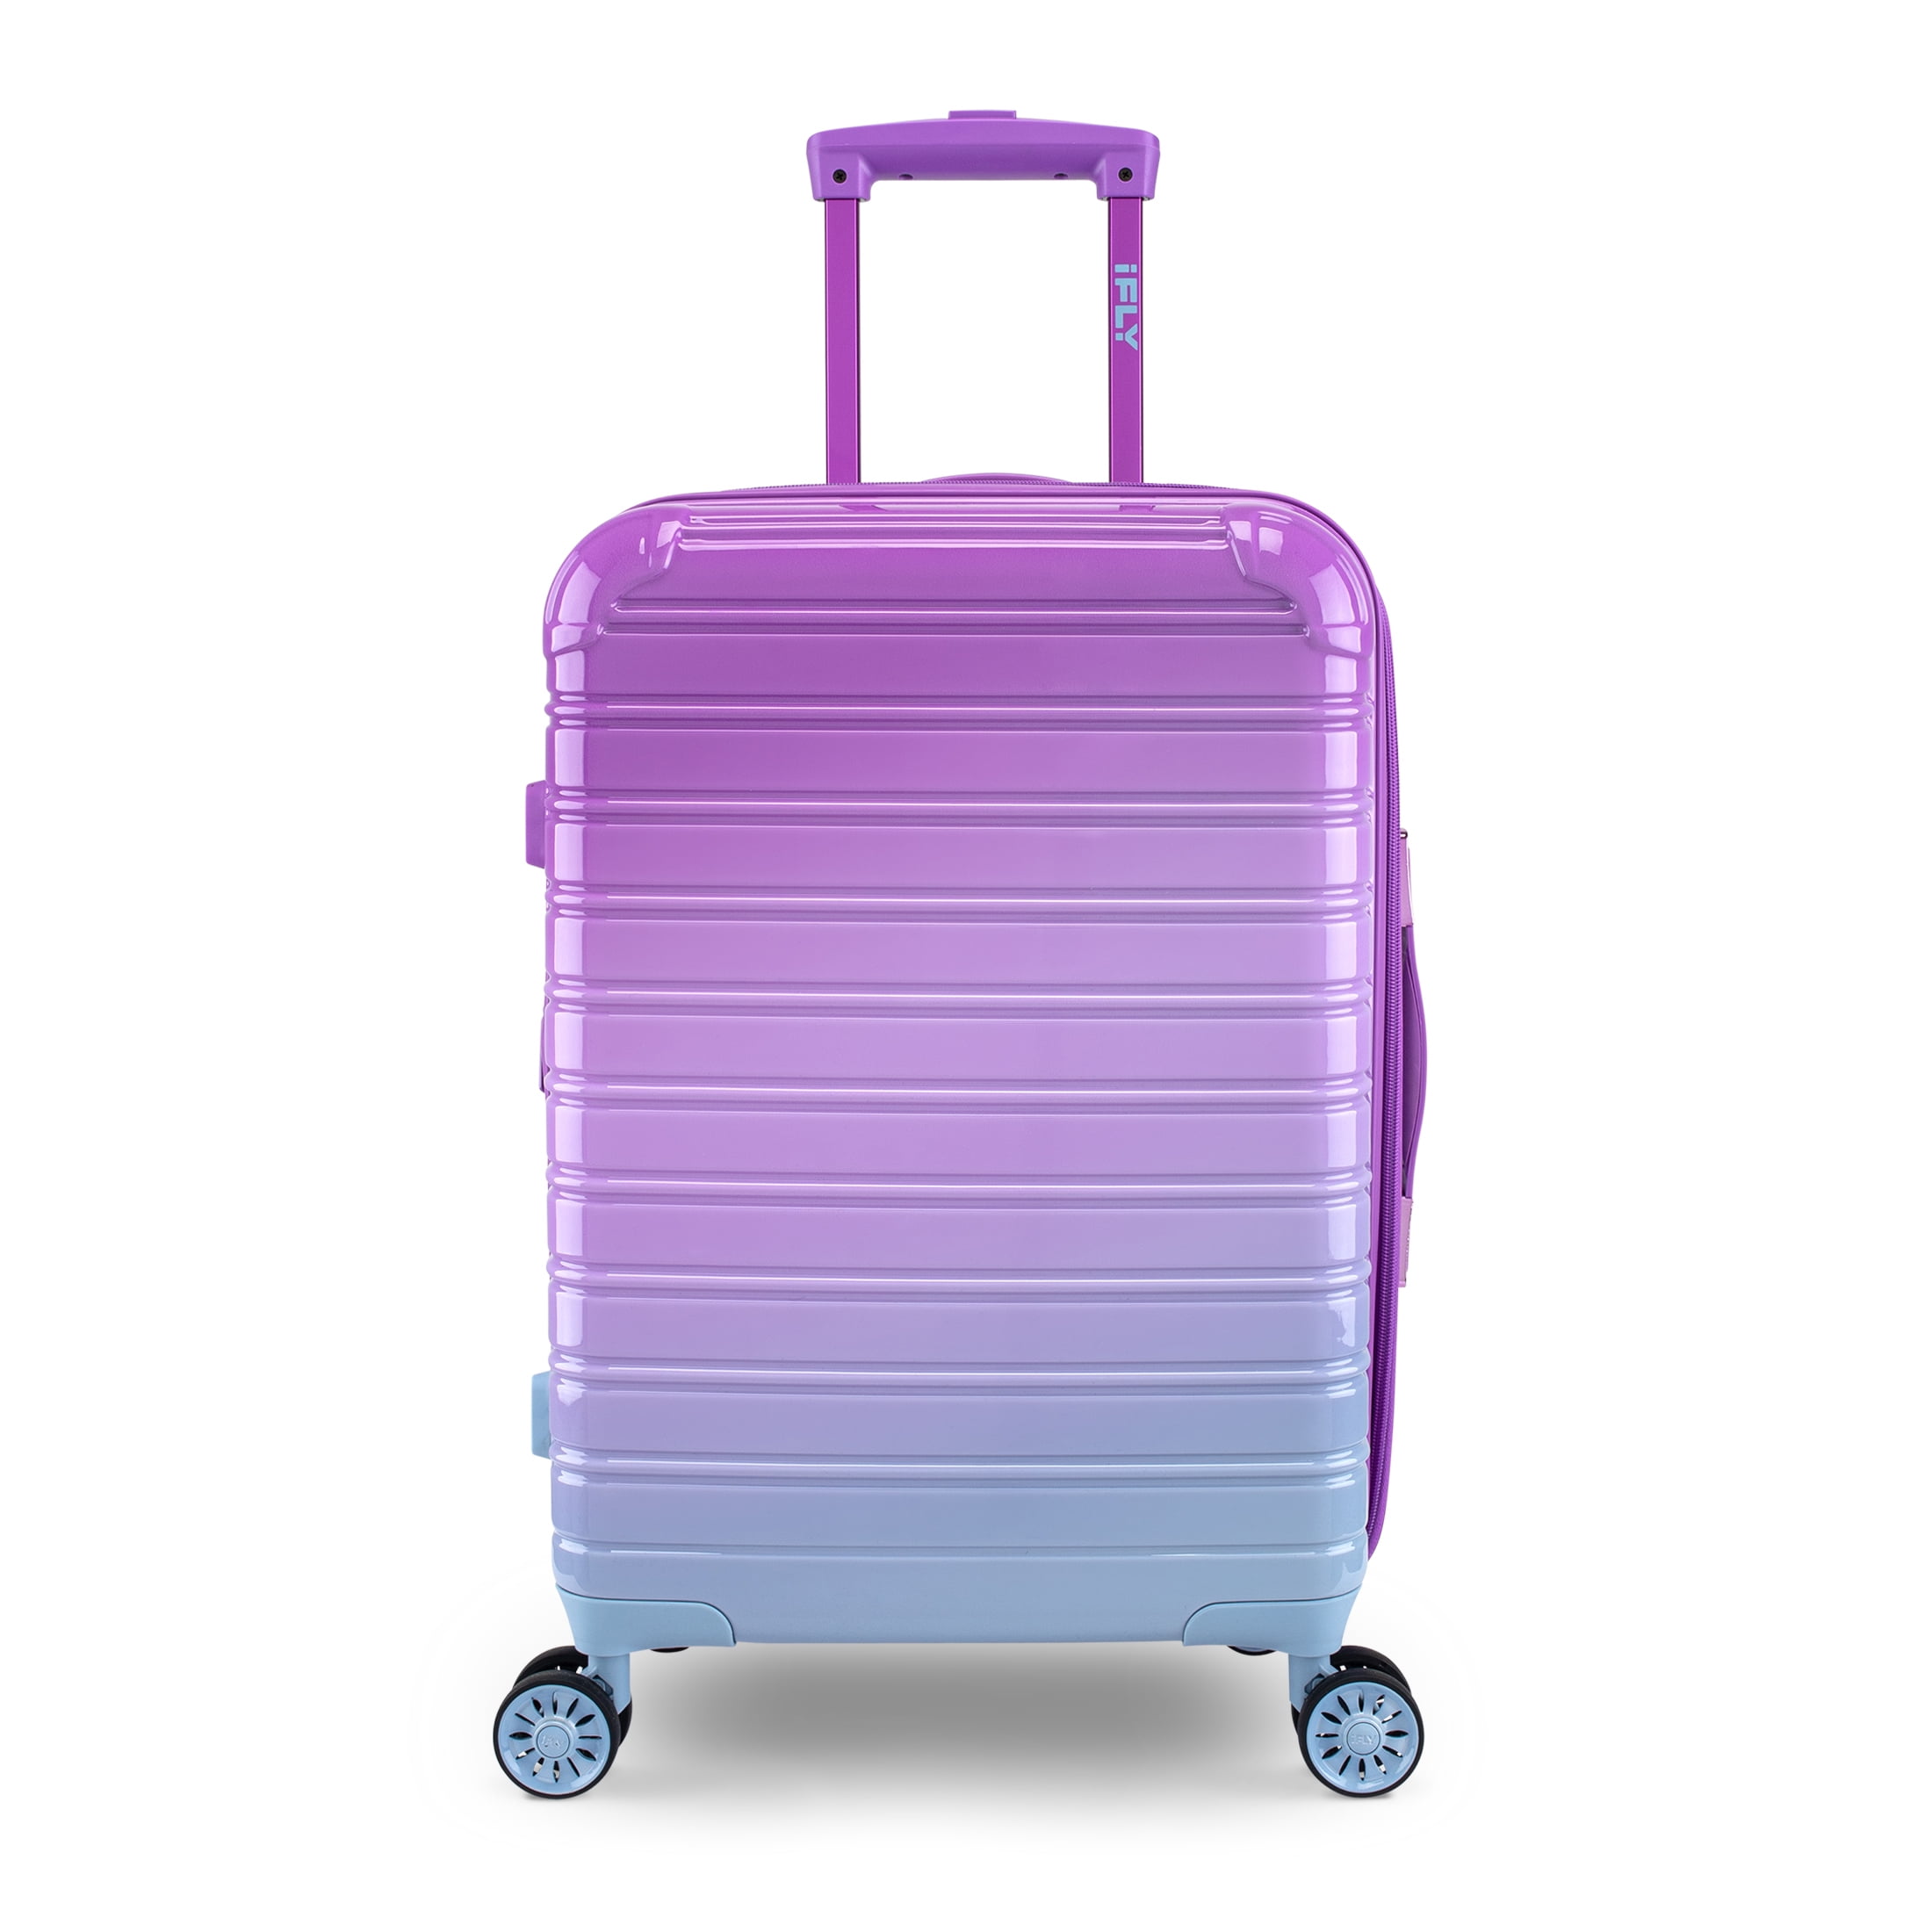 iFLY Hardside Luggage Fibertech 20